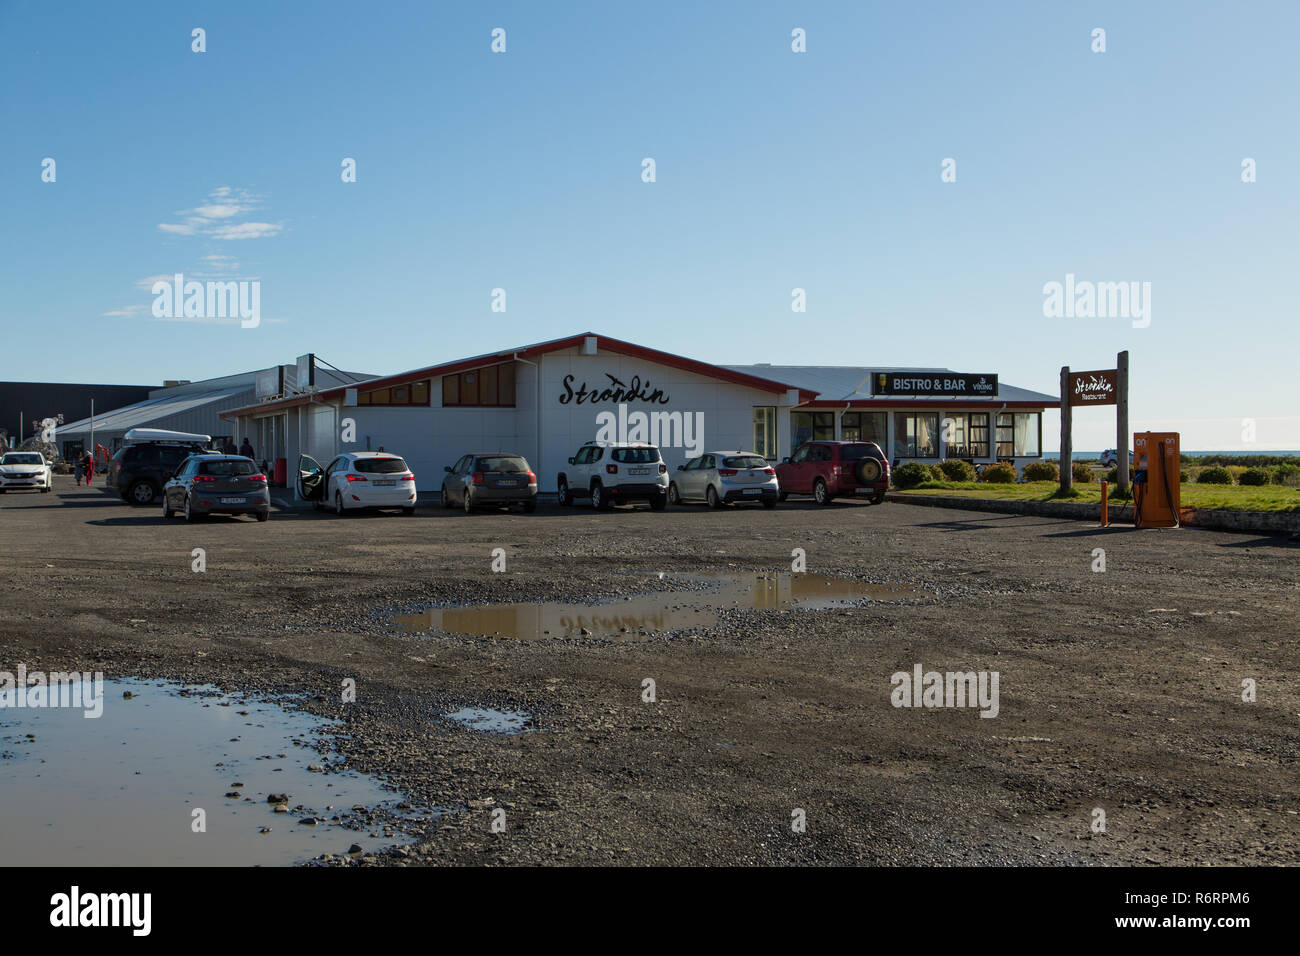 Voitures garées à l'extérieur de bistro, Strondin, bar et restaurant dans la région de Vik, l'Islande. Banque D'Images